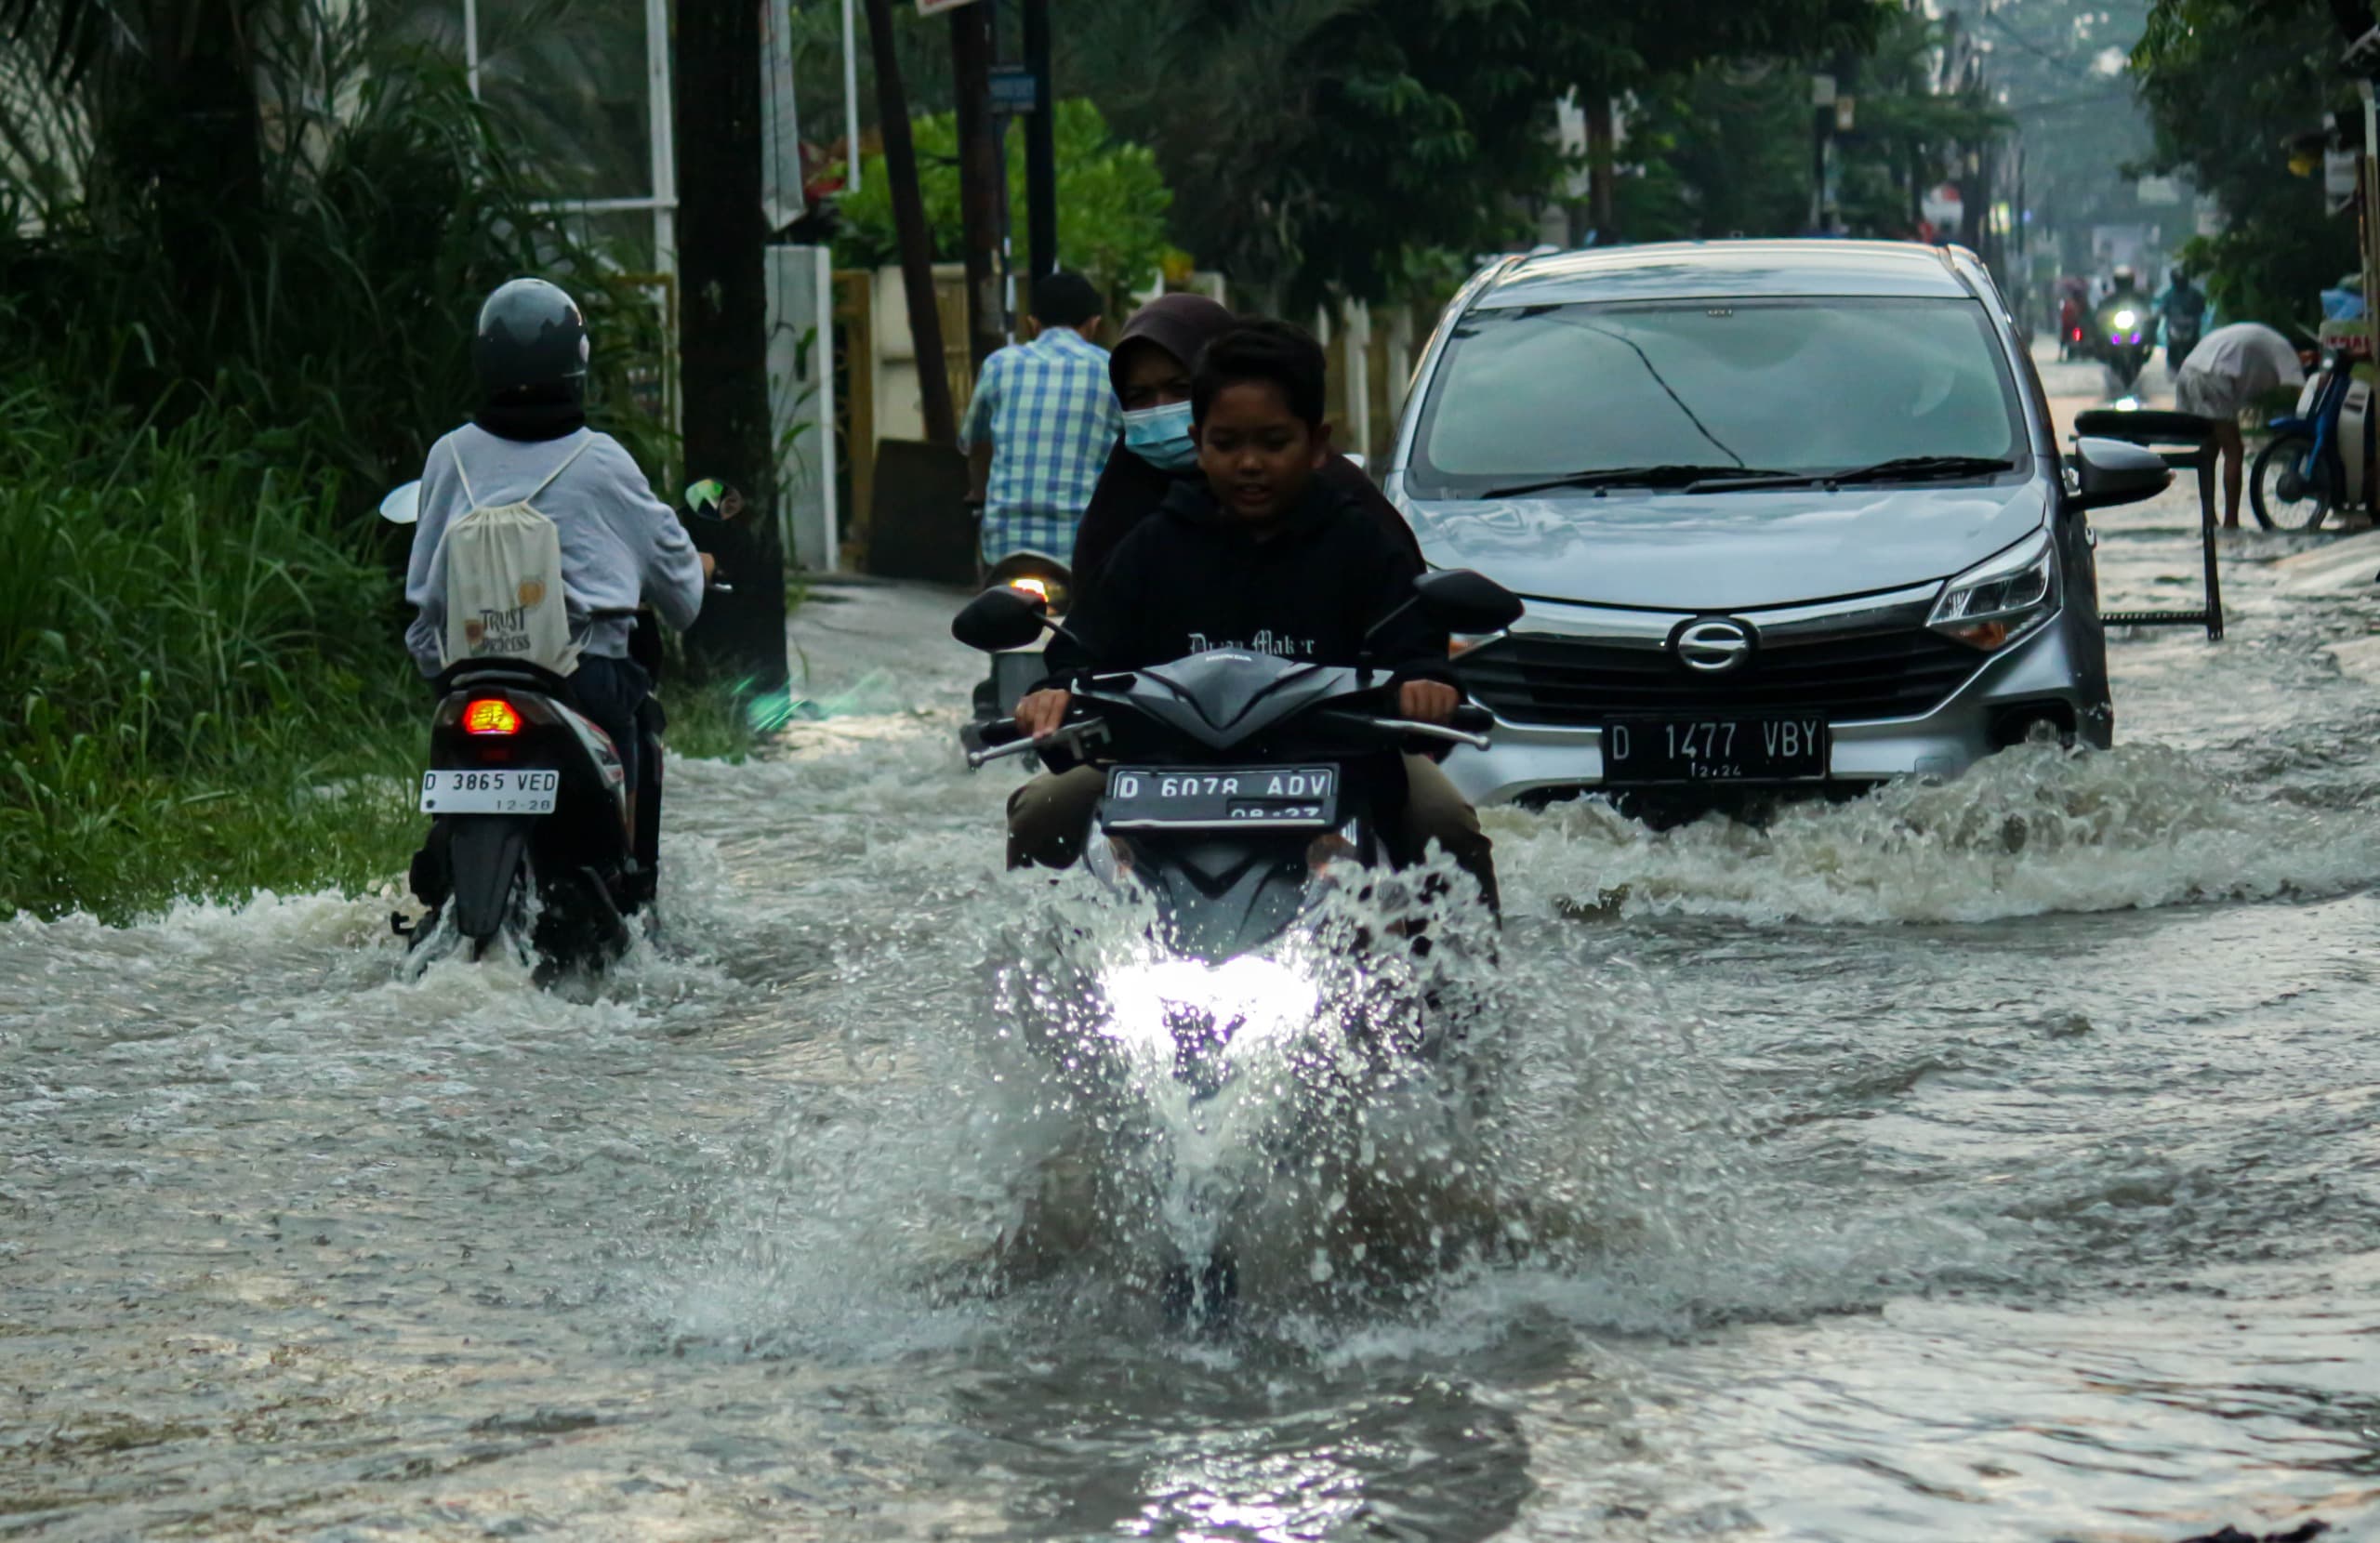 Ilustrasi: Sejumlah warga Kota Bandung sedang menerabas banjir yang menggenangi jalan. (Pandu Muslim/Jabar Ekspres)